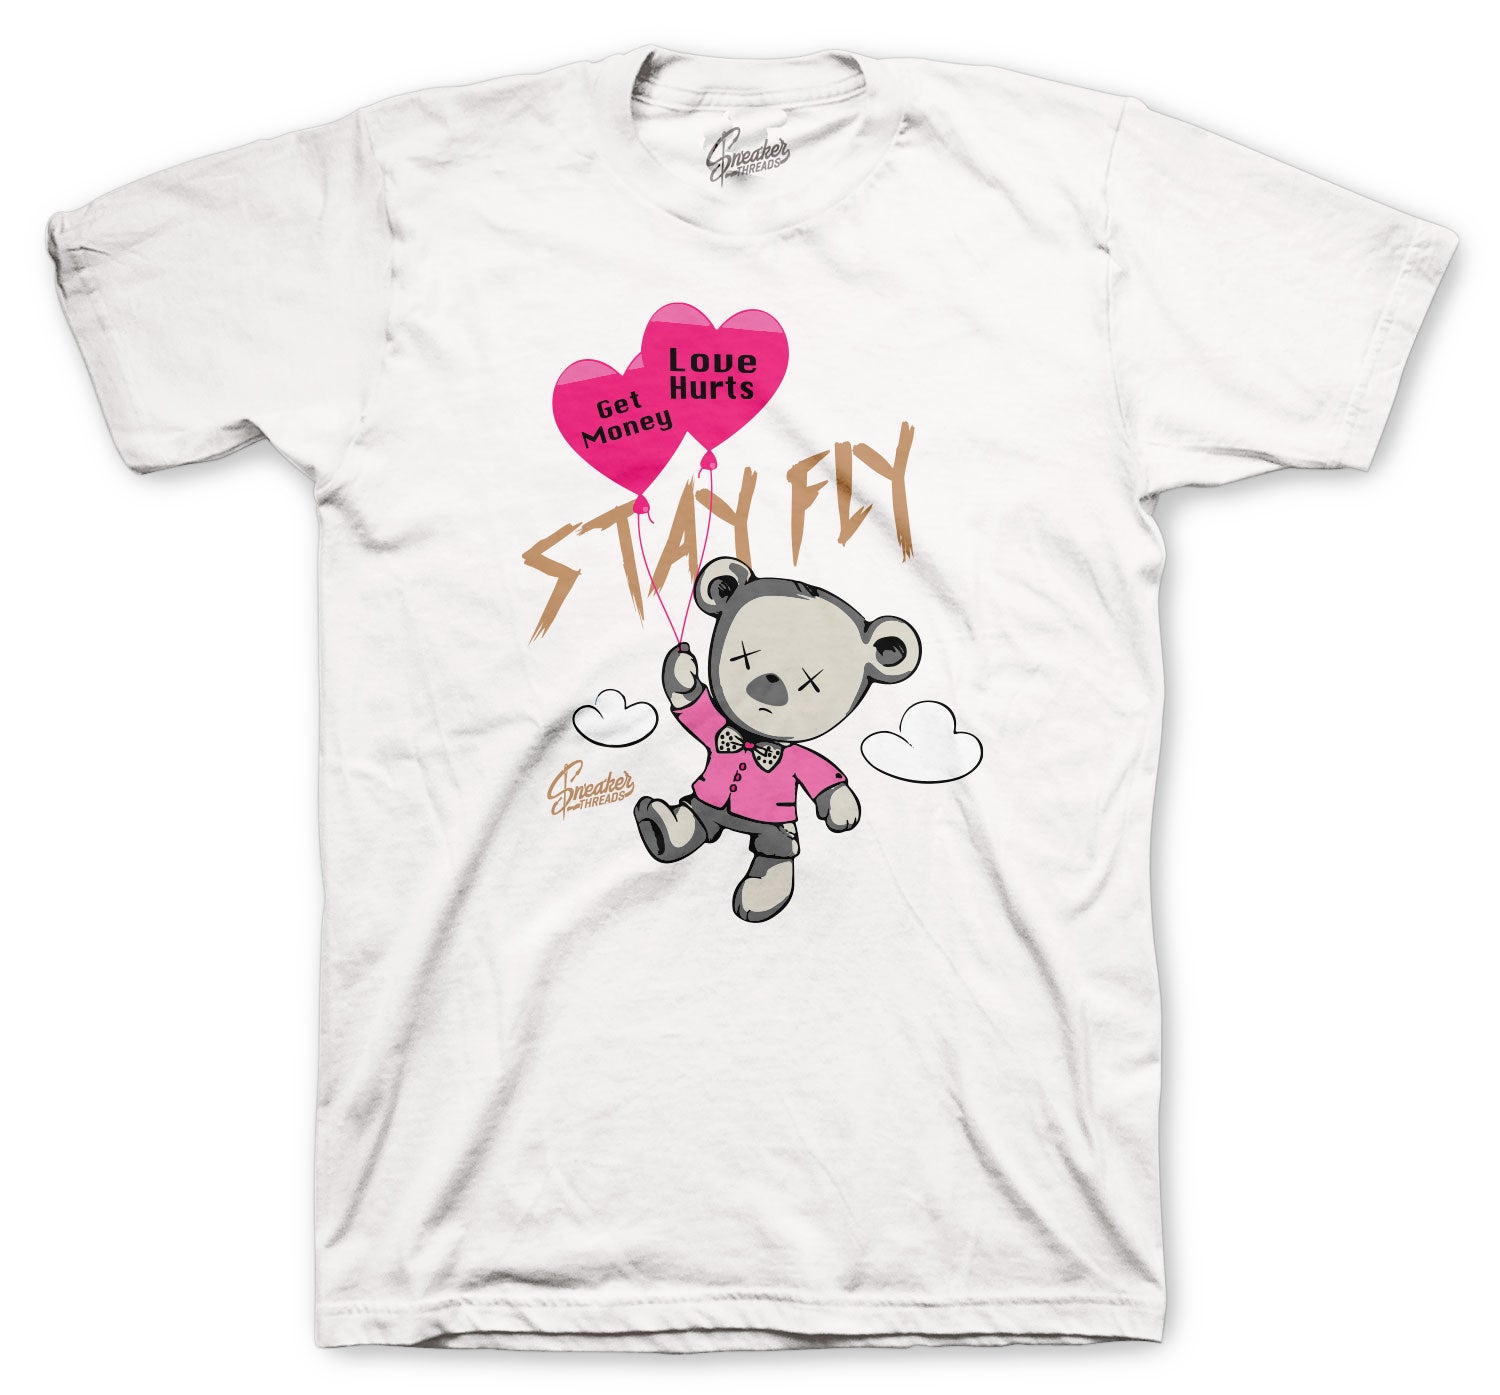 Retro 13 CNY Shirt - Money Over Love - White